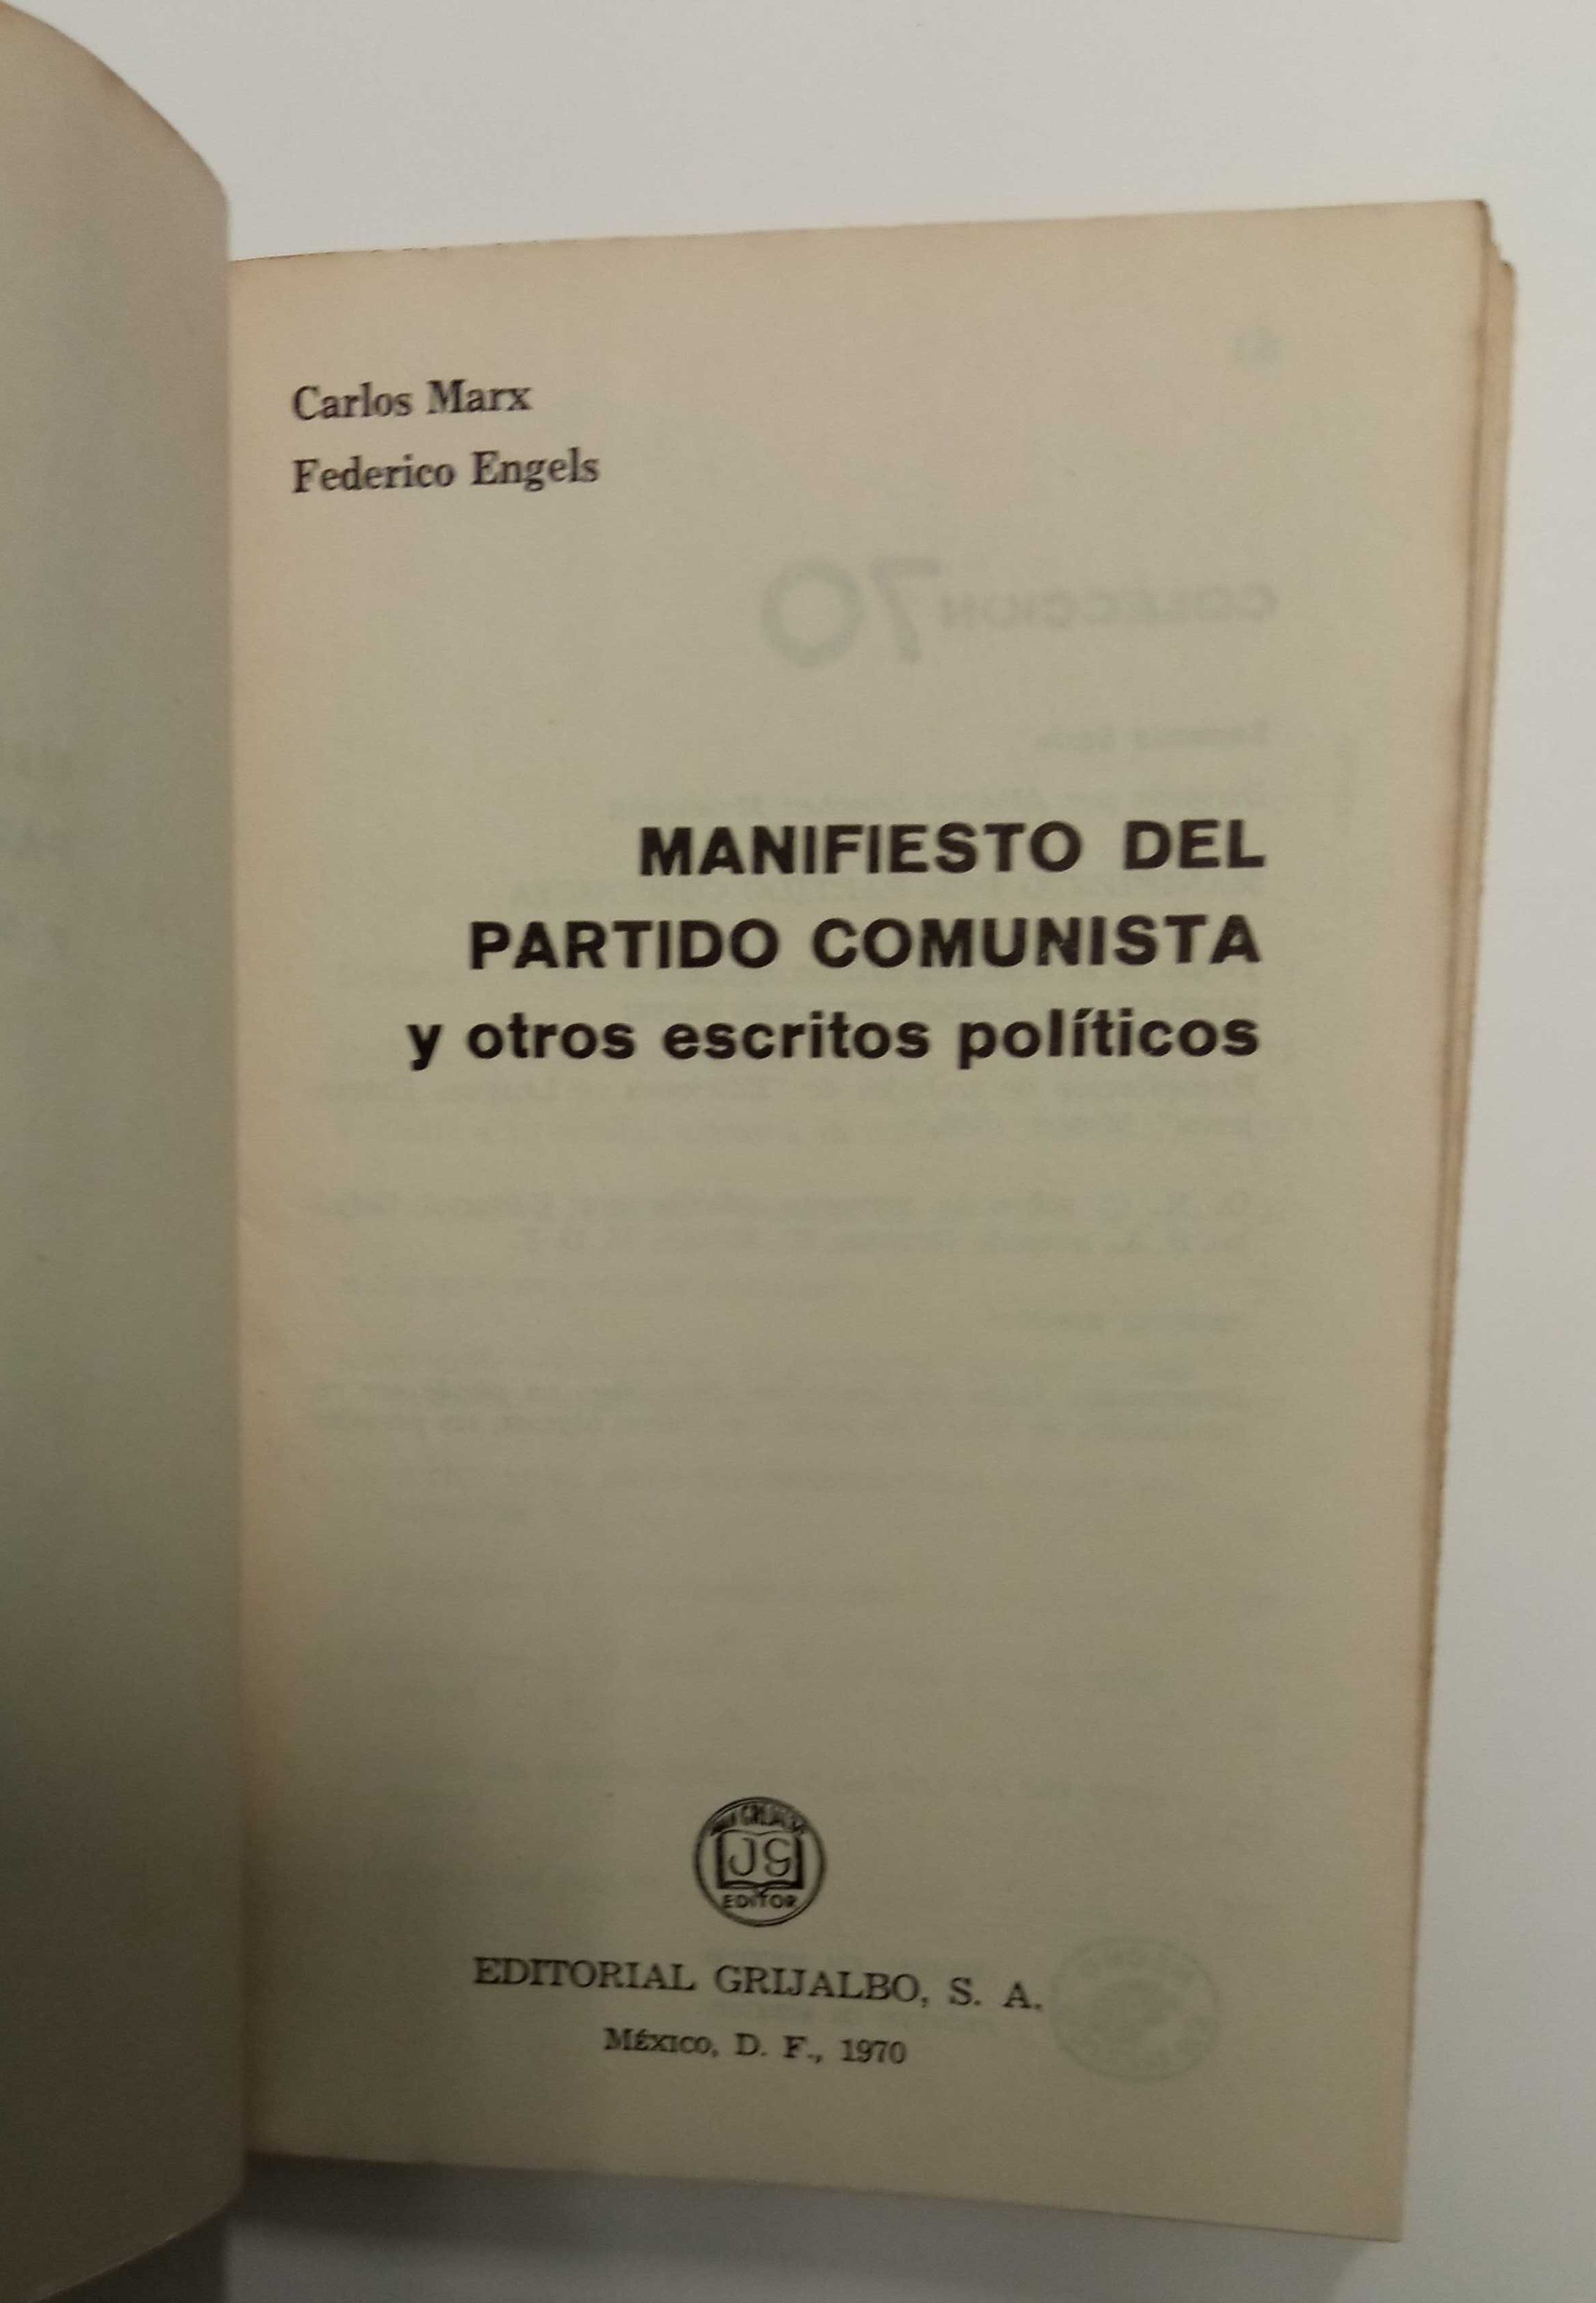 Manifiesto del partido comunista y otros escritos políticos